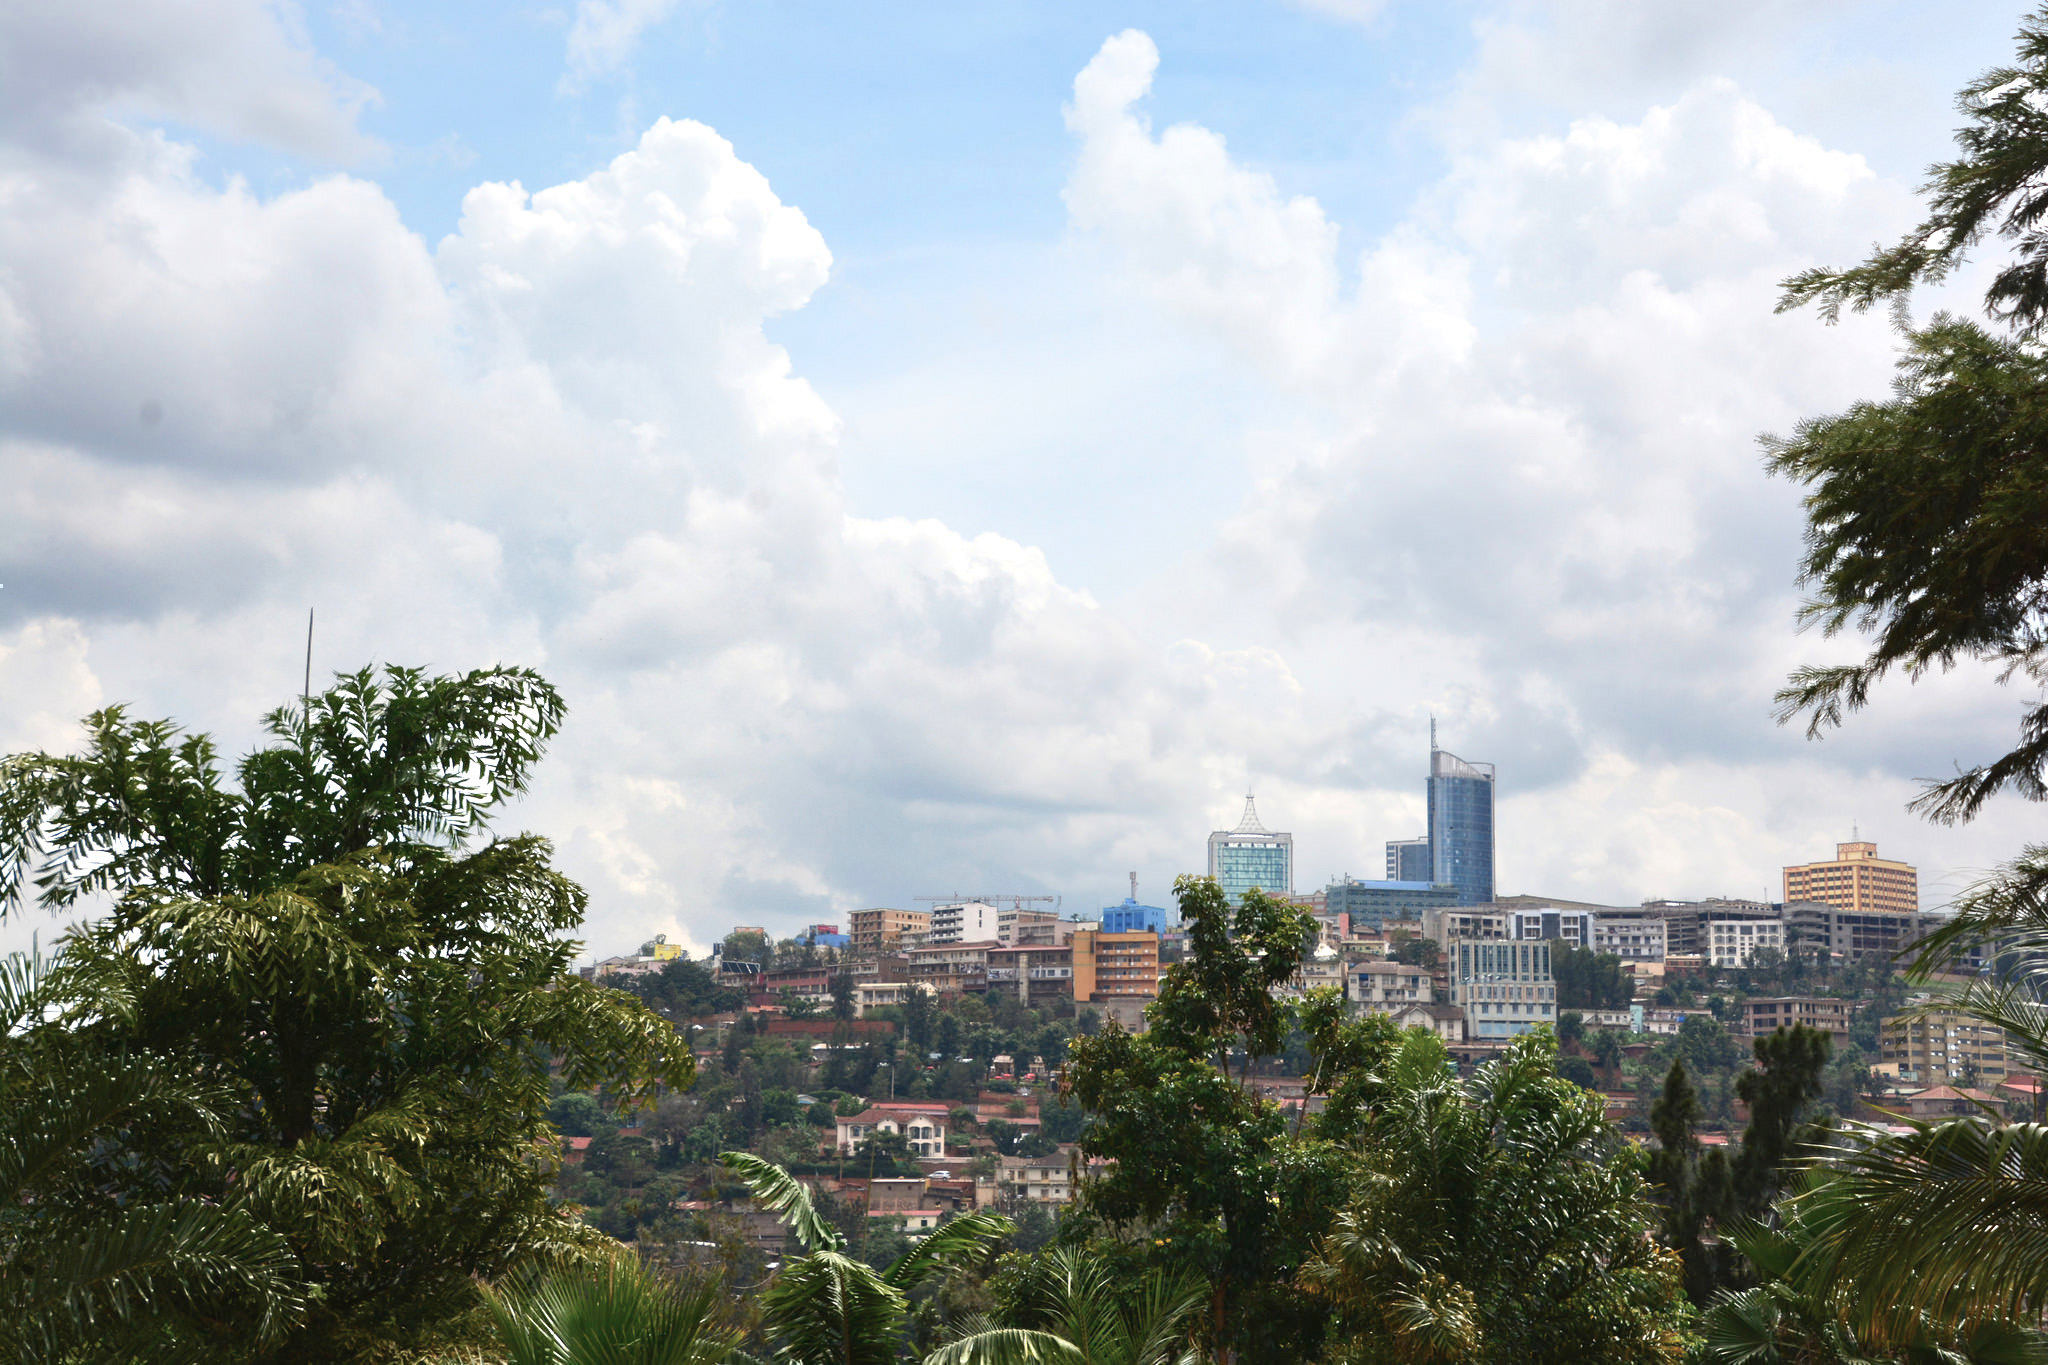 visit rwanda images